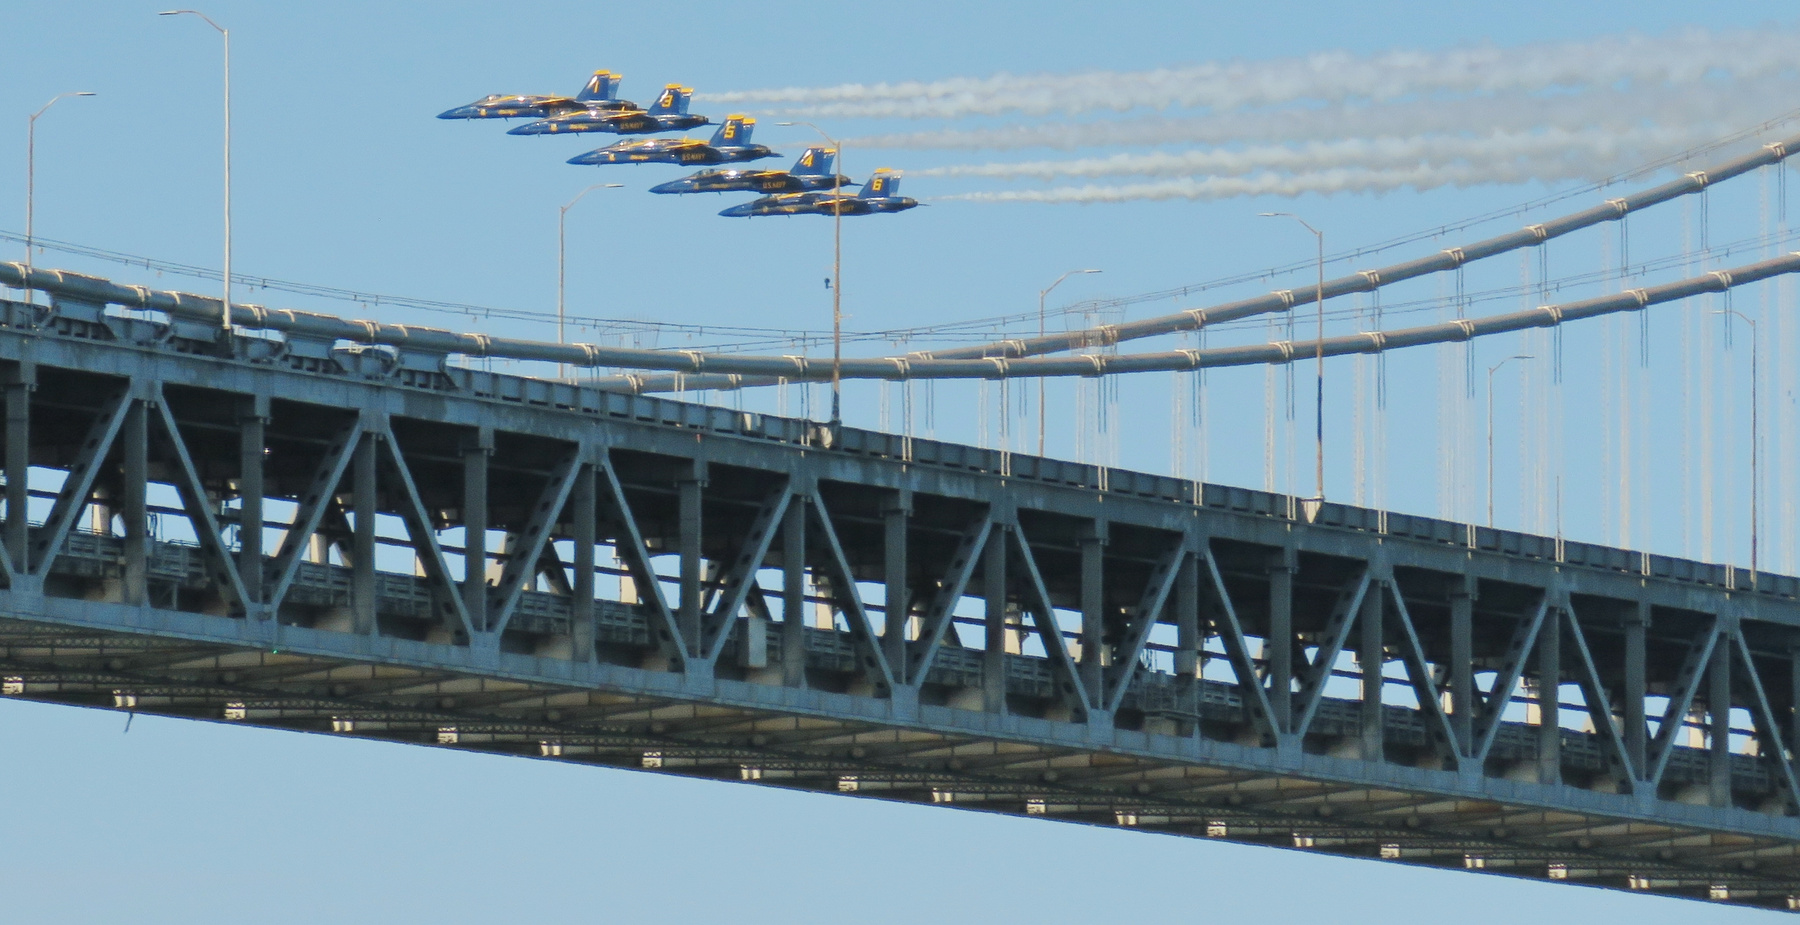 Эскадрилья "Голубые Ангелы" голубые ангелы морская авиация самолёт самолёты истребители-бомбардировщики штурмовики хорнет эскадрилья полёт мост blue angels mcdonnell douglas F A-18 hornet squadron bay bridge